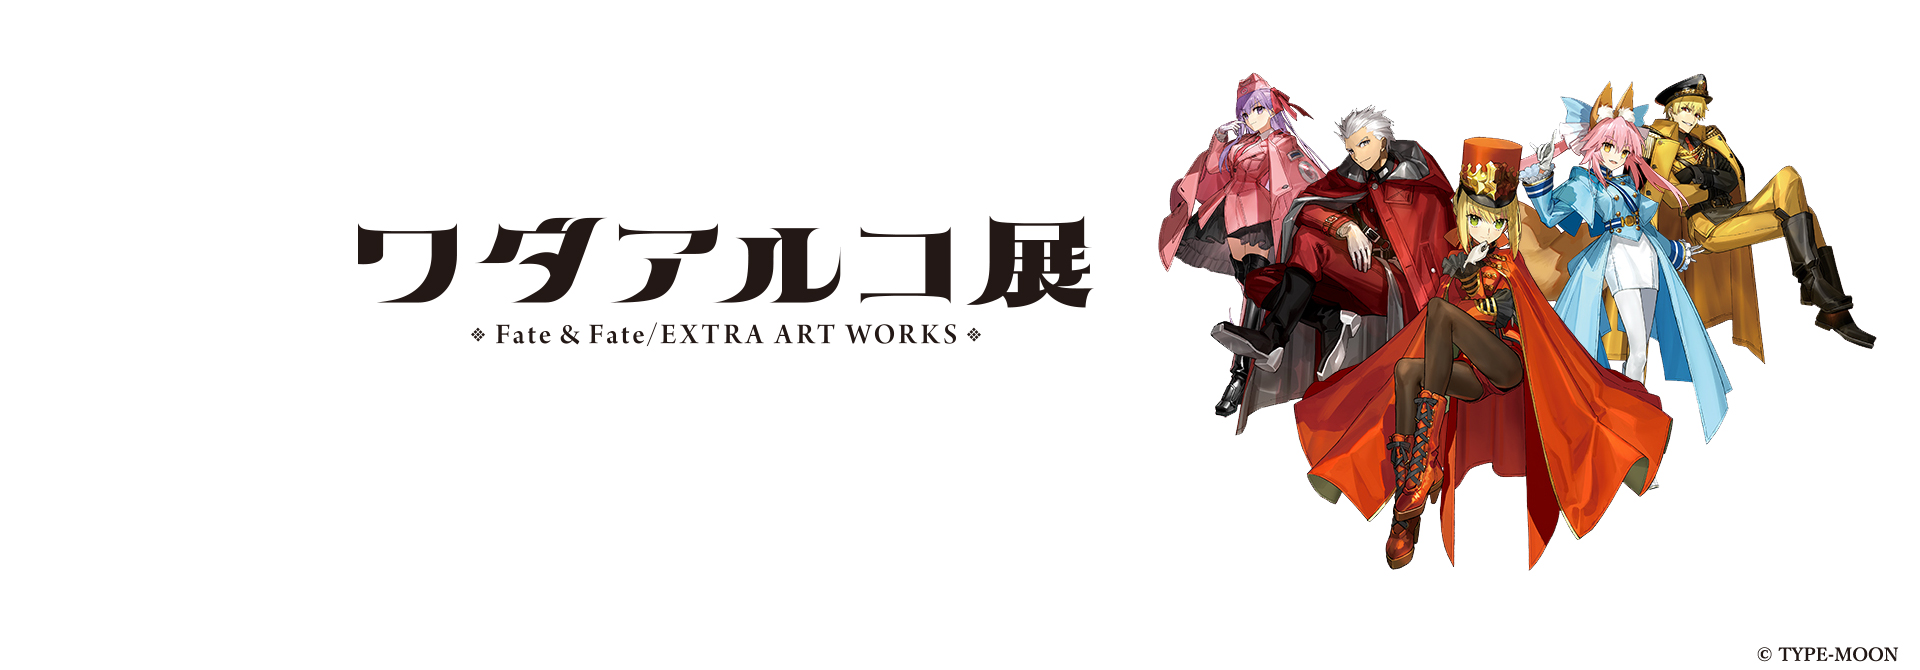 ワダアルコ展 Fate & Fate/EXTRA ART WORKS